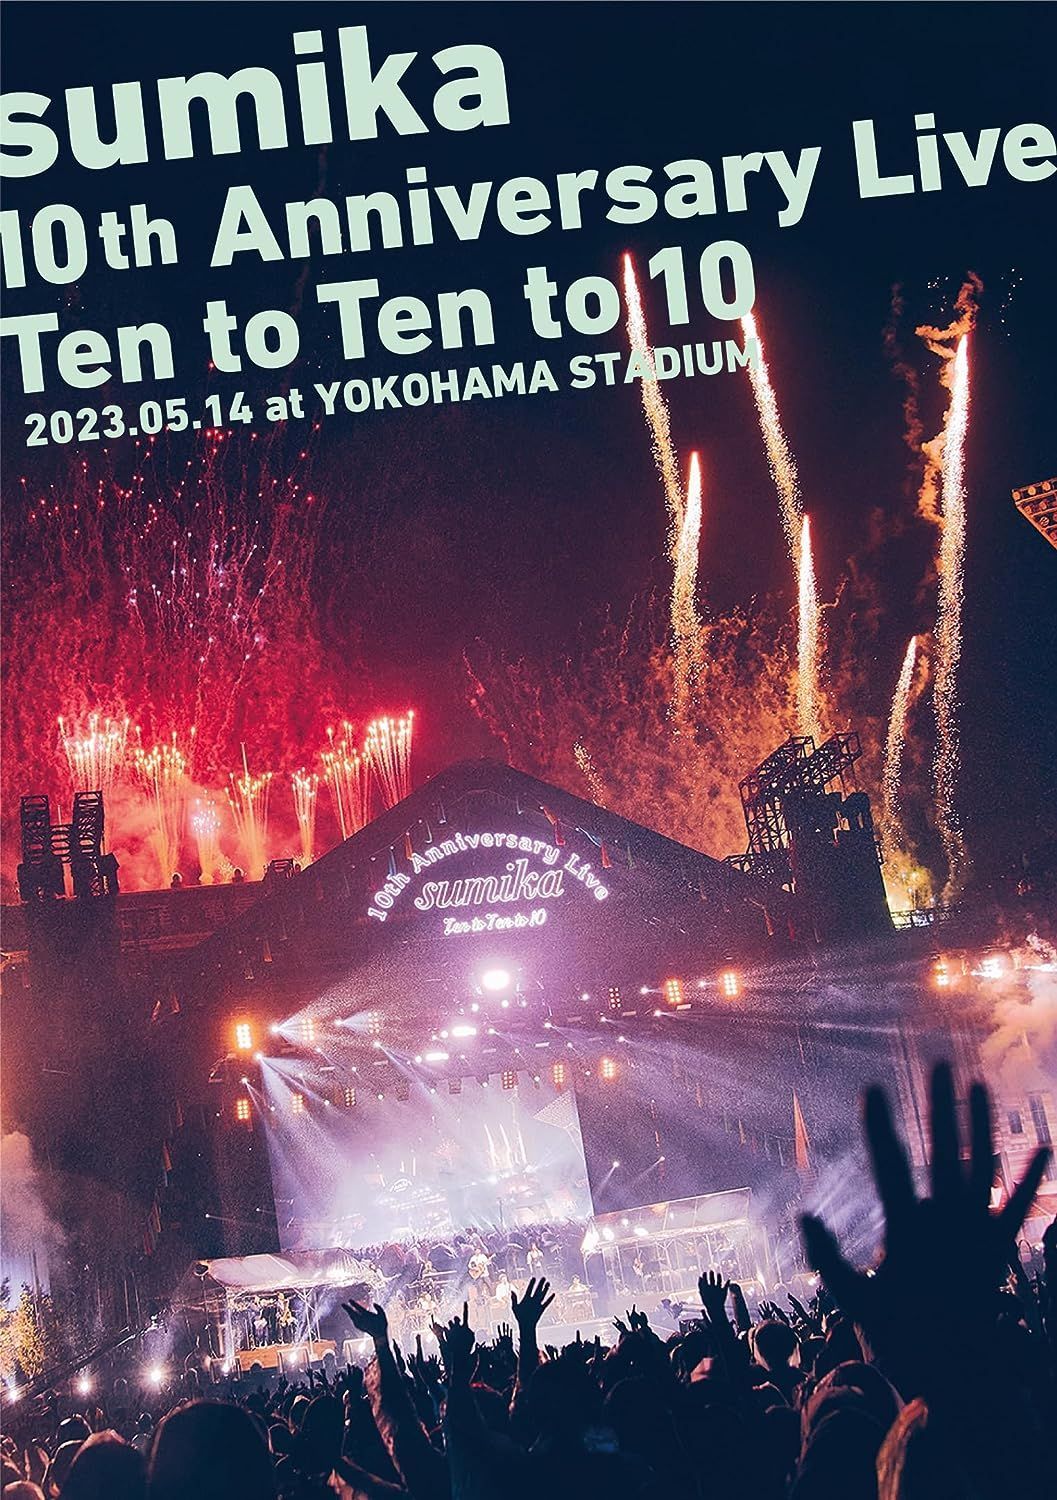 新品未開封☆sumika 10th Anniversary Live『Ten to Ten to 10』2023.05.14 at YOKOHAMA  STADIUM (通常盤) (Blu-ray) (特典なし) ブルーレイ - メルカリ